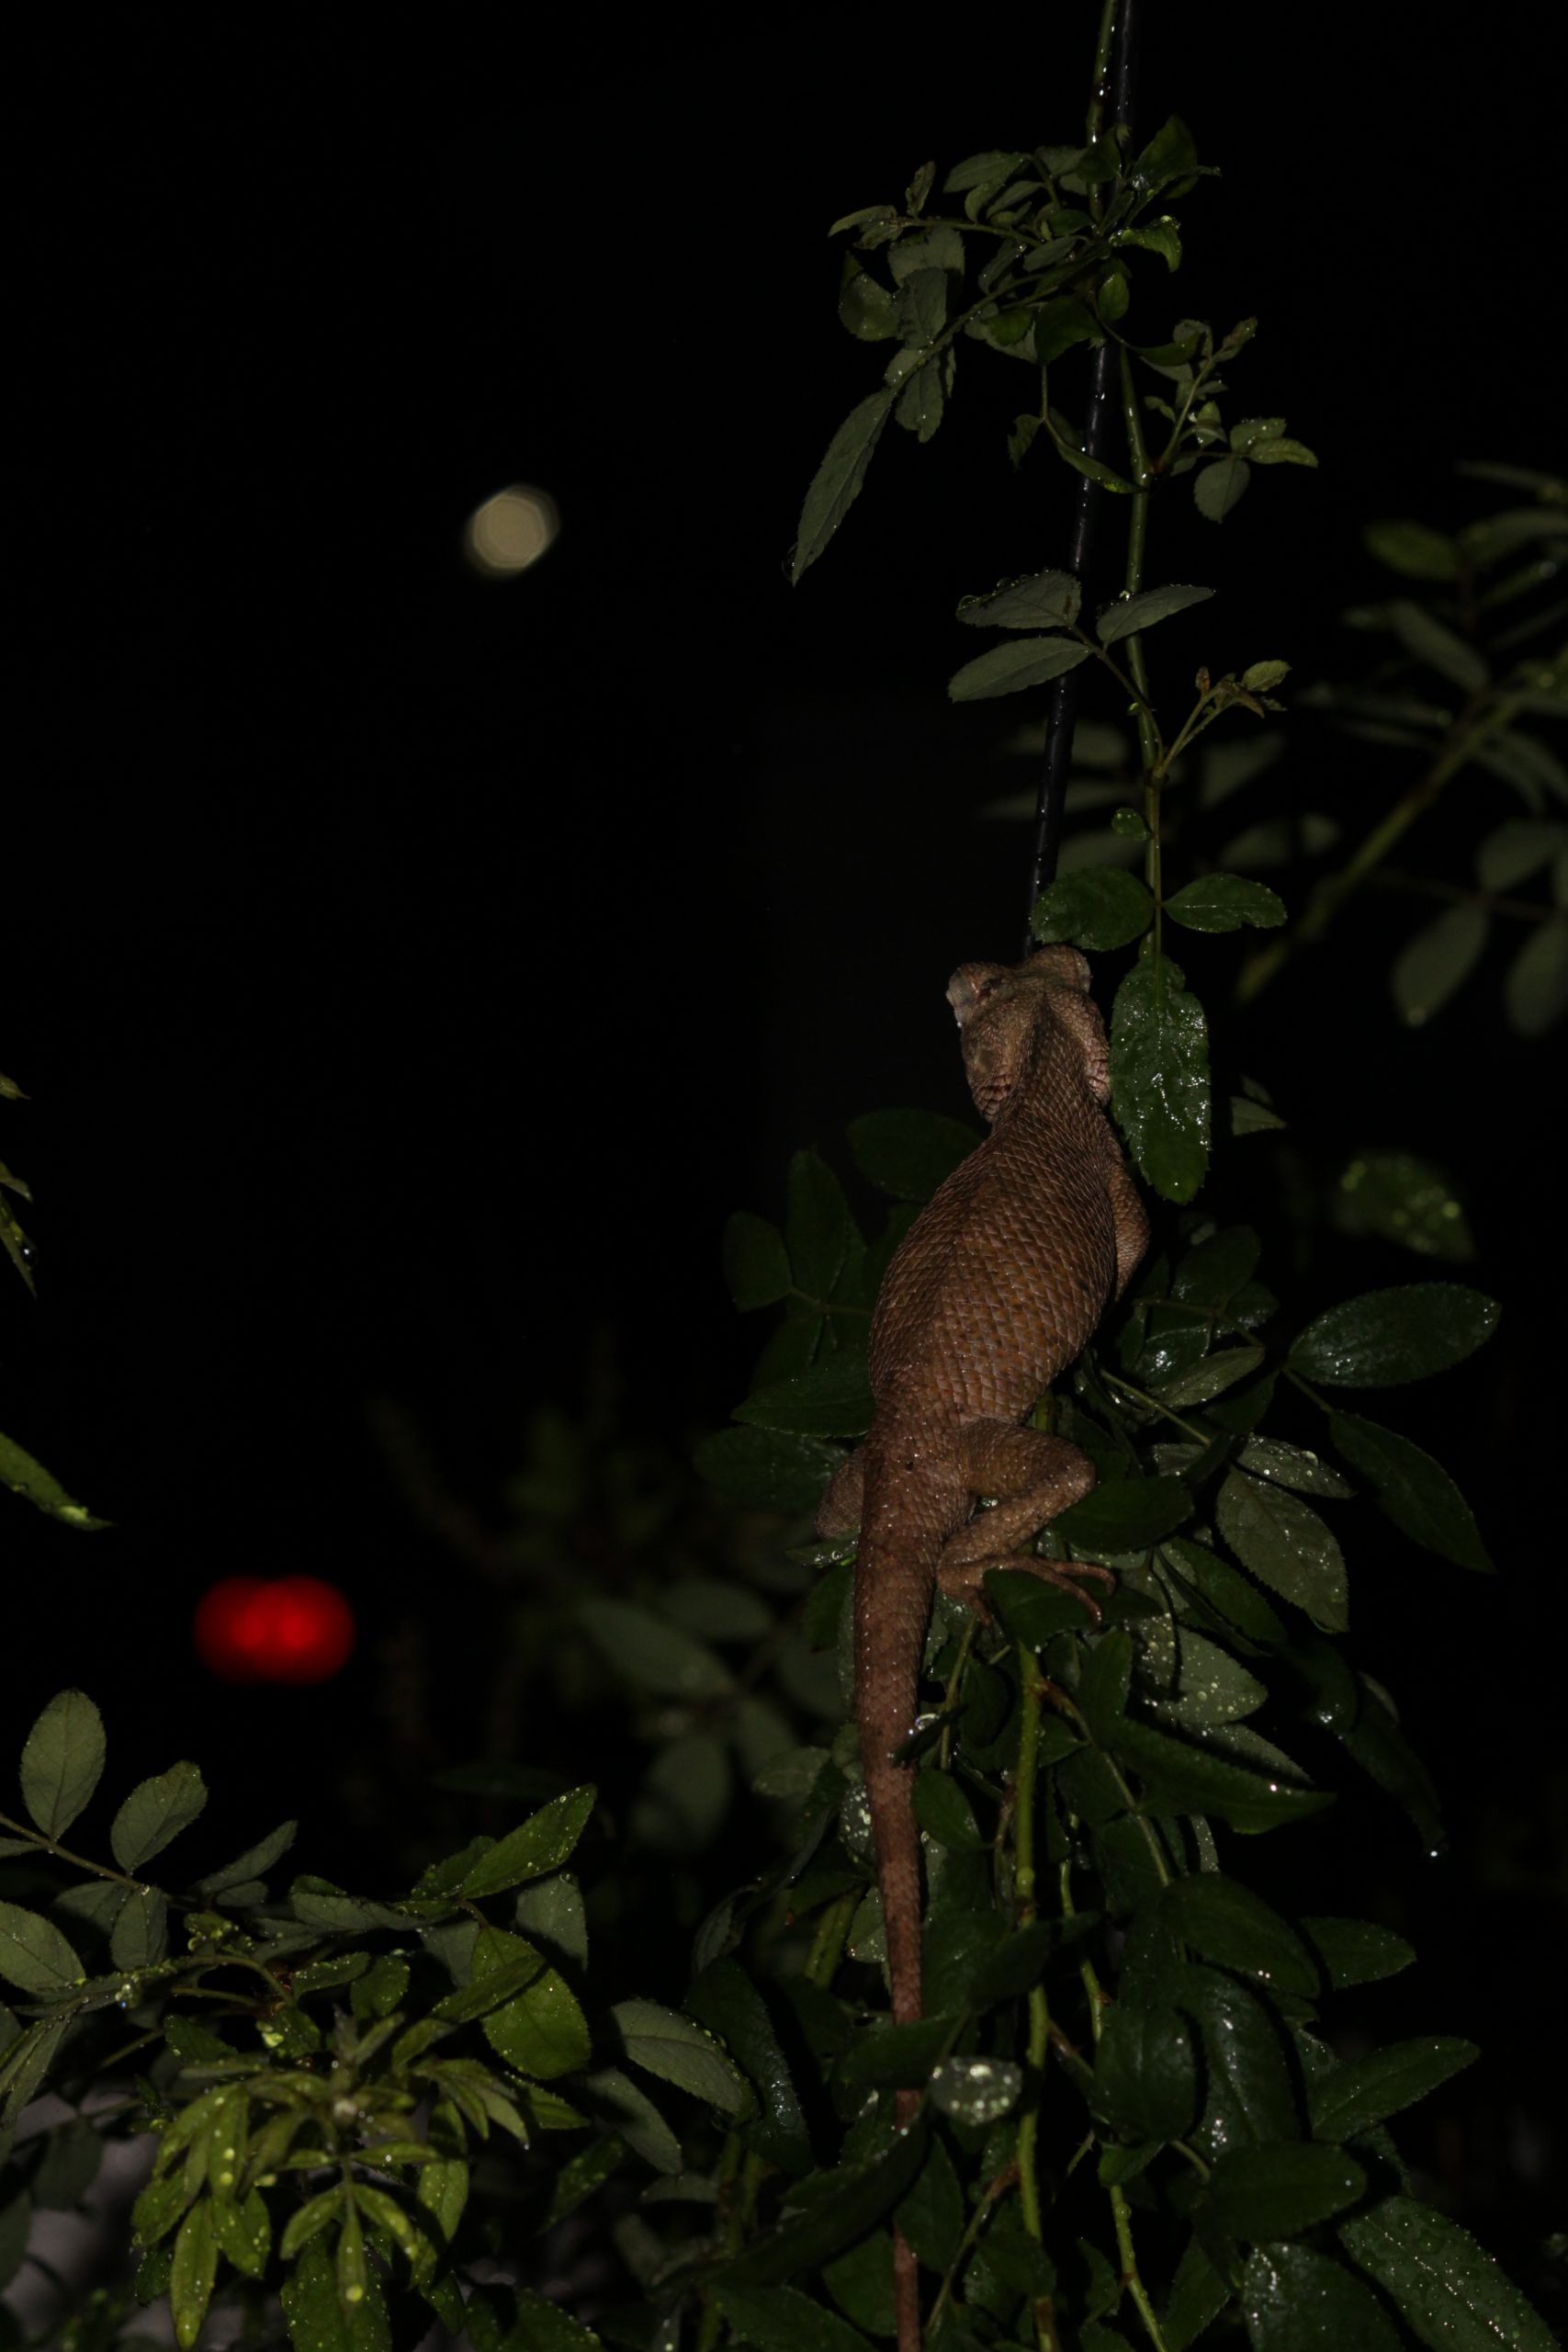 Lizard in darkness